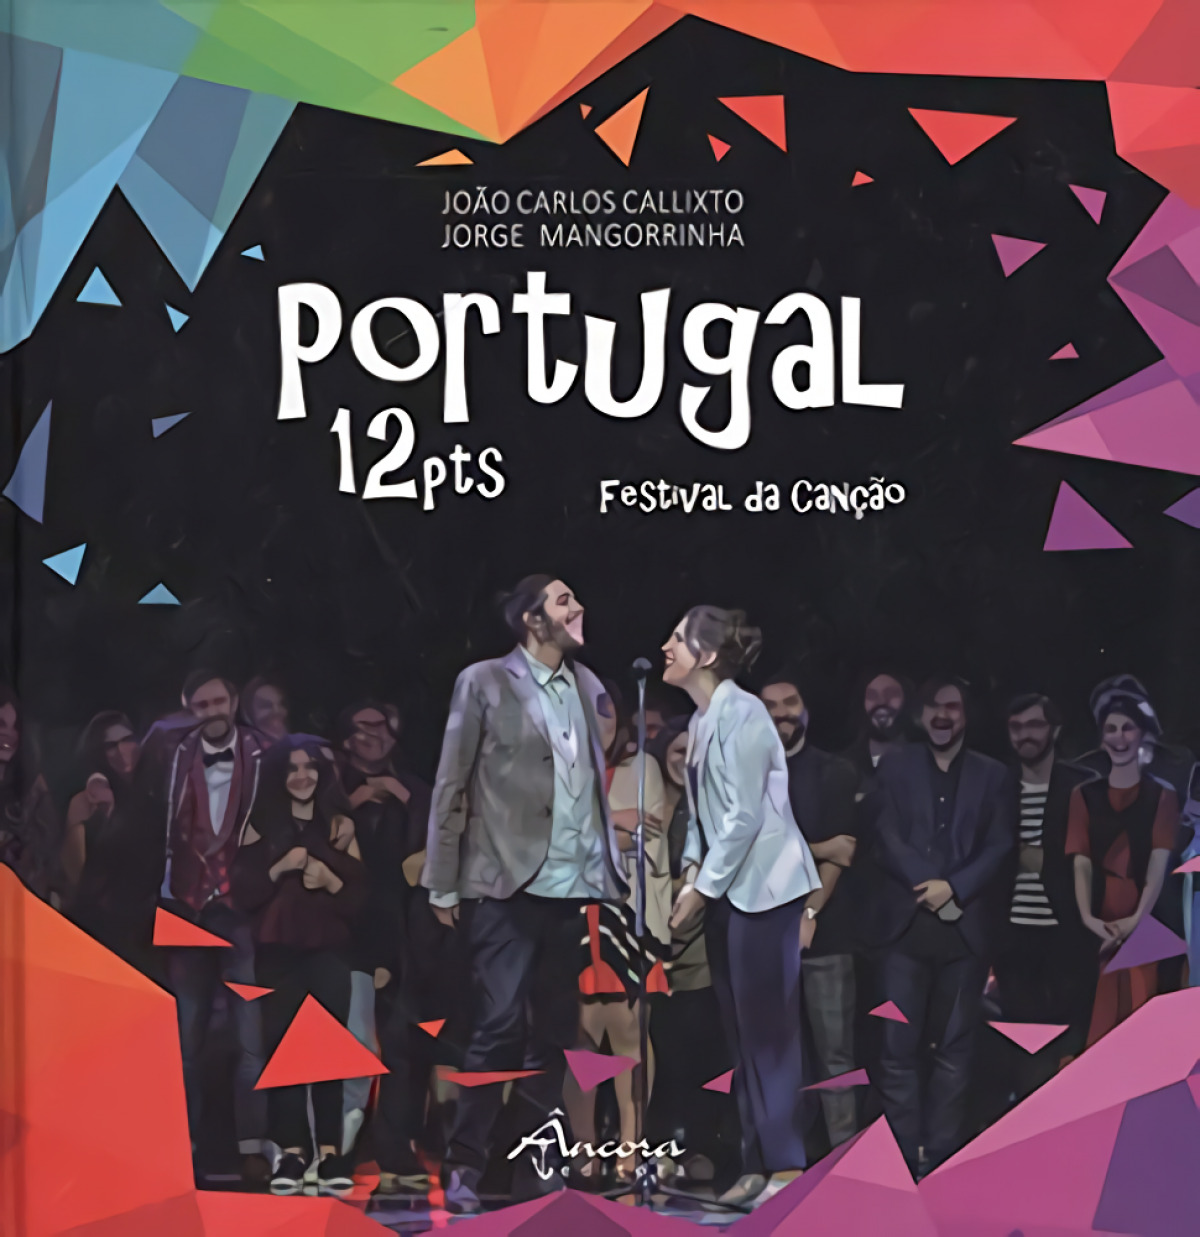 PORTUGAL 12 PTS Festival da canção - Callixto, João Carlos/Mangorrinha, Jorge